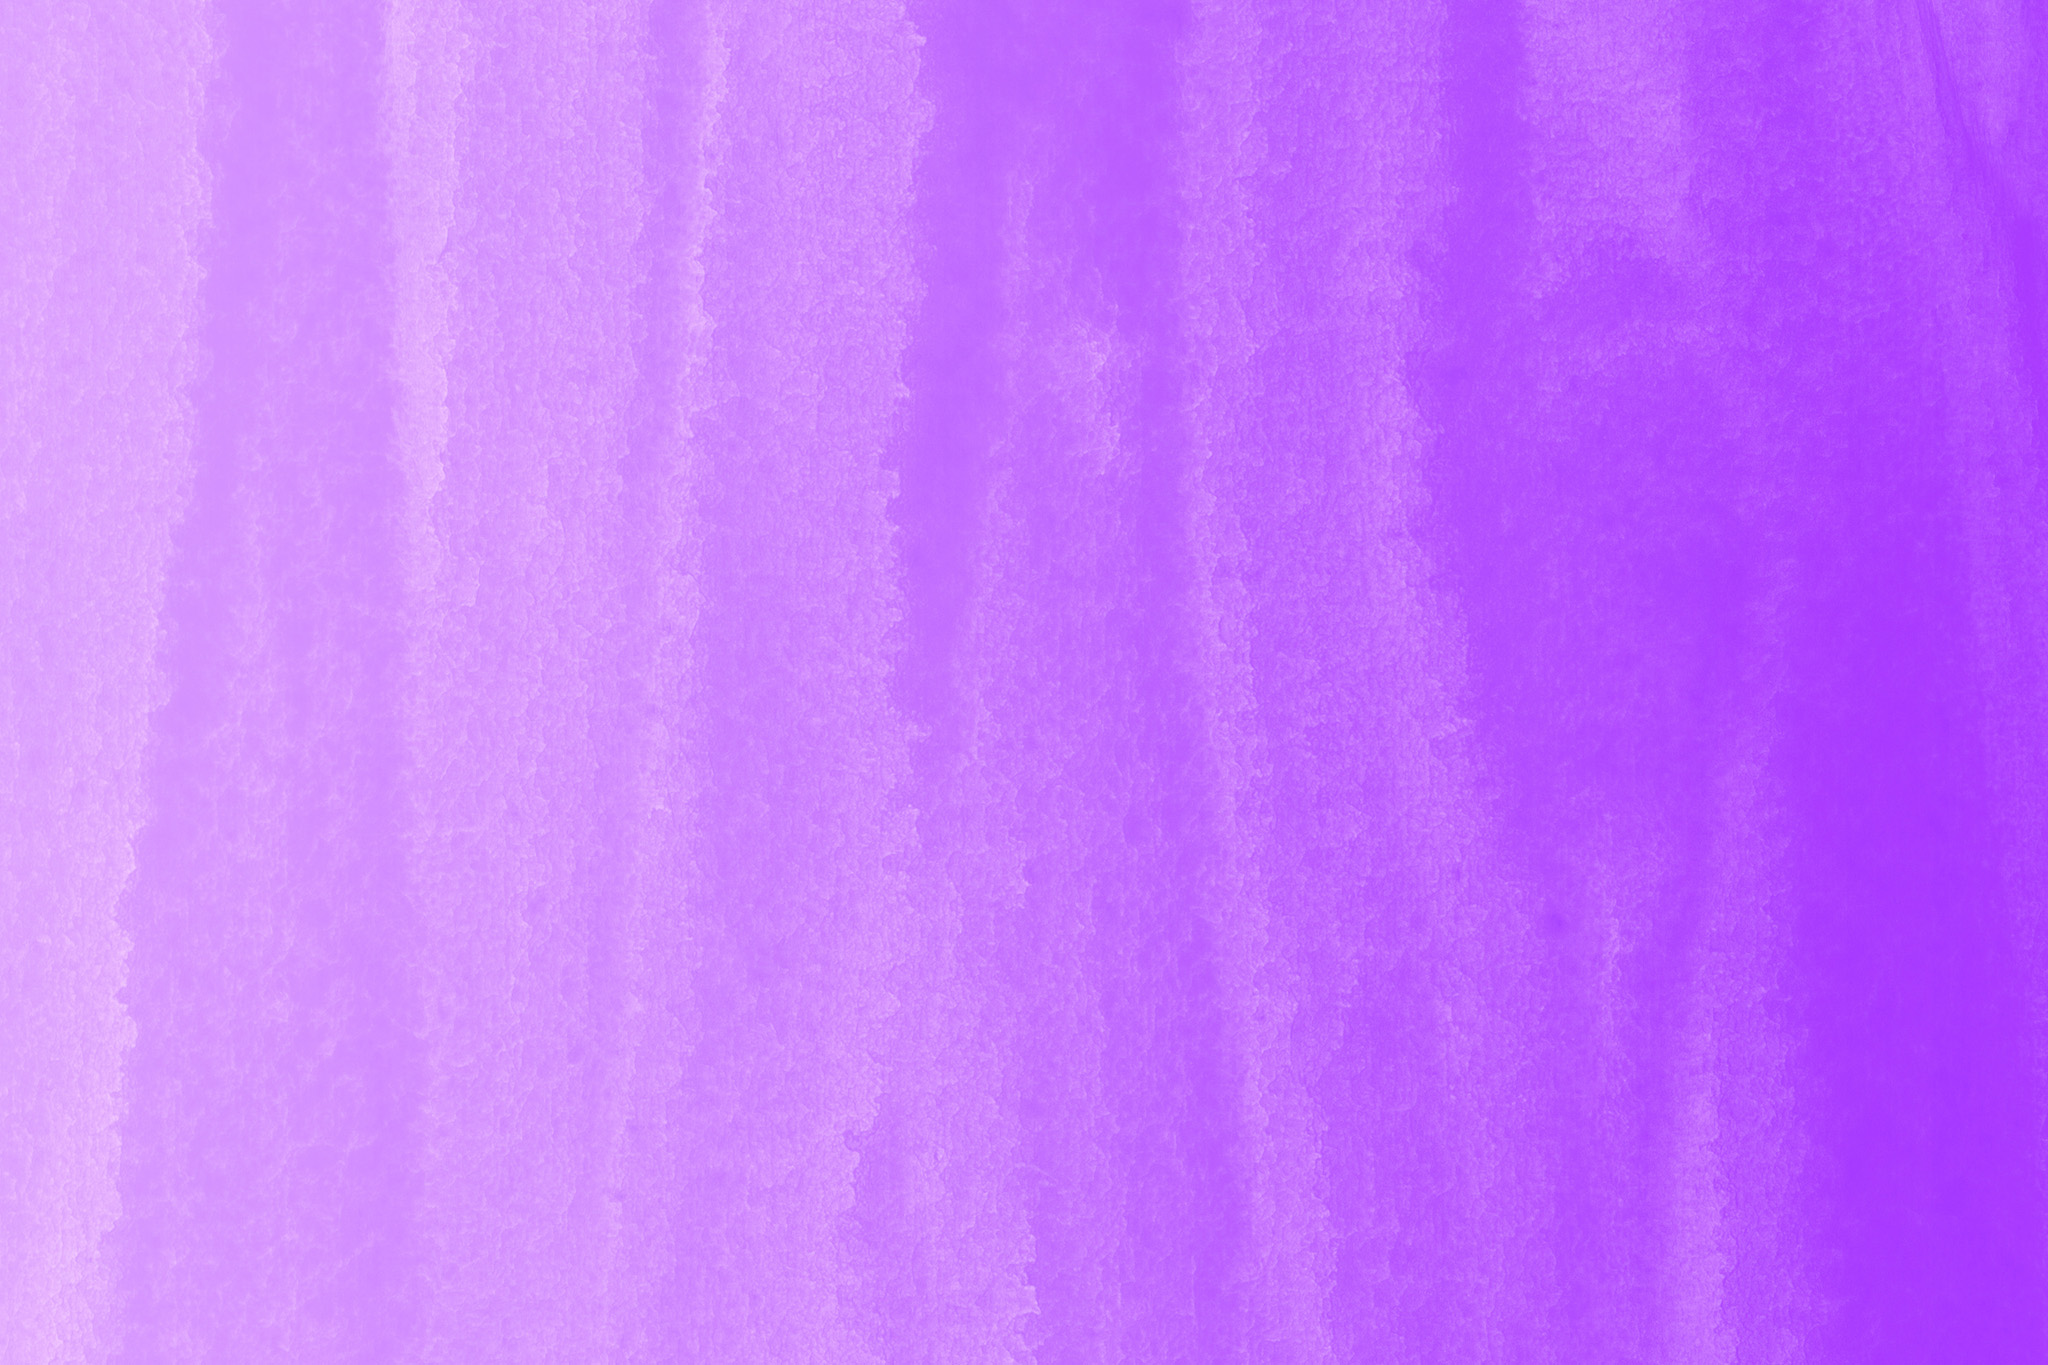 クールな紫色のグラデーション壁紙 の画像素材を無料ダウンロード 1 フリー素材 Beiz Images